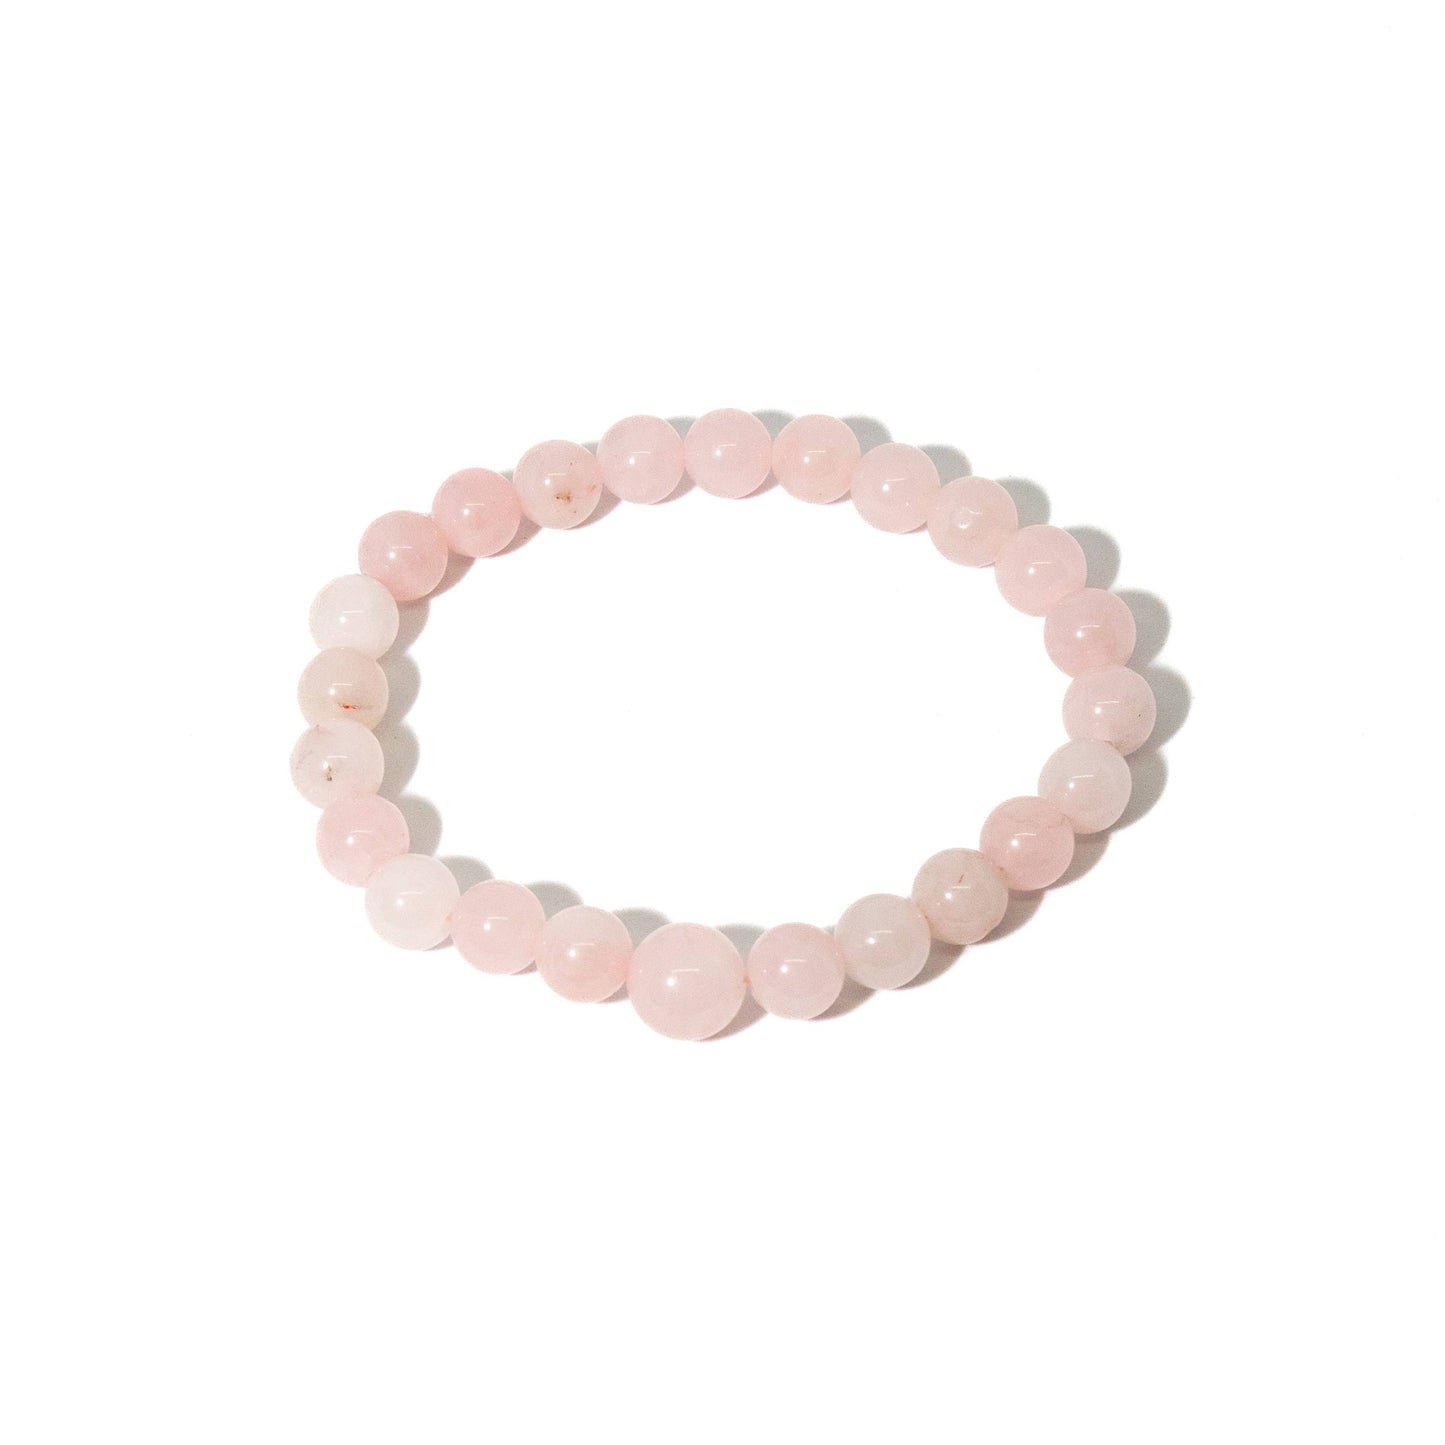 Rose Quartz Stretchy Beaded Bracelet - Prayer Beads - 8mm (4 Pack)